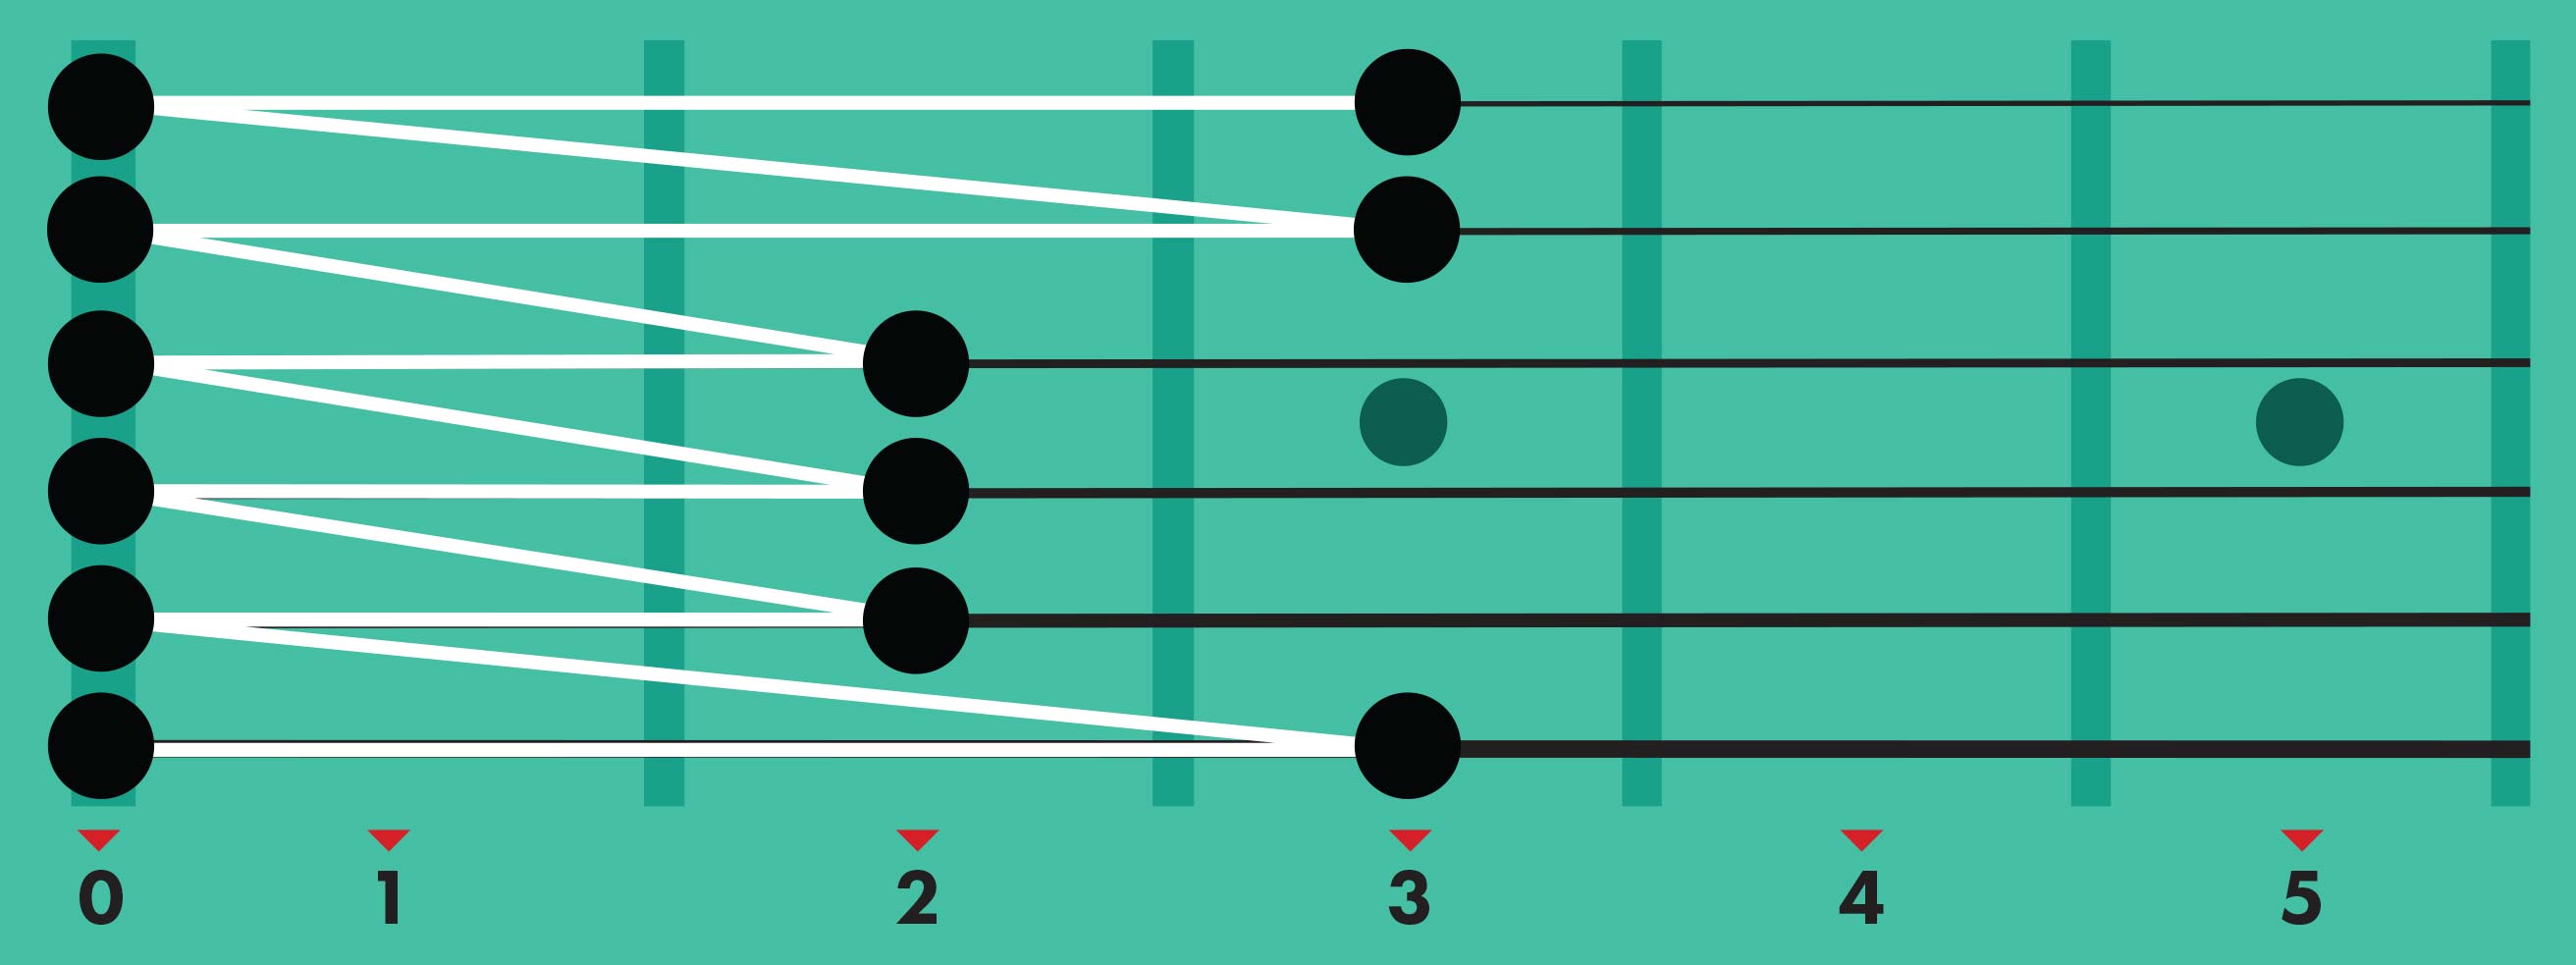 5 Escalas de guitarra esenciales  para principiantes